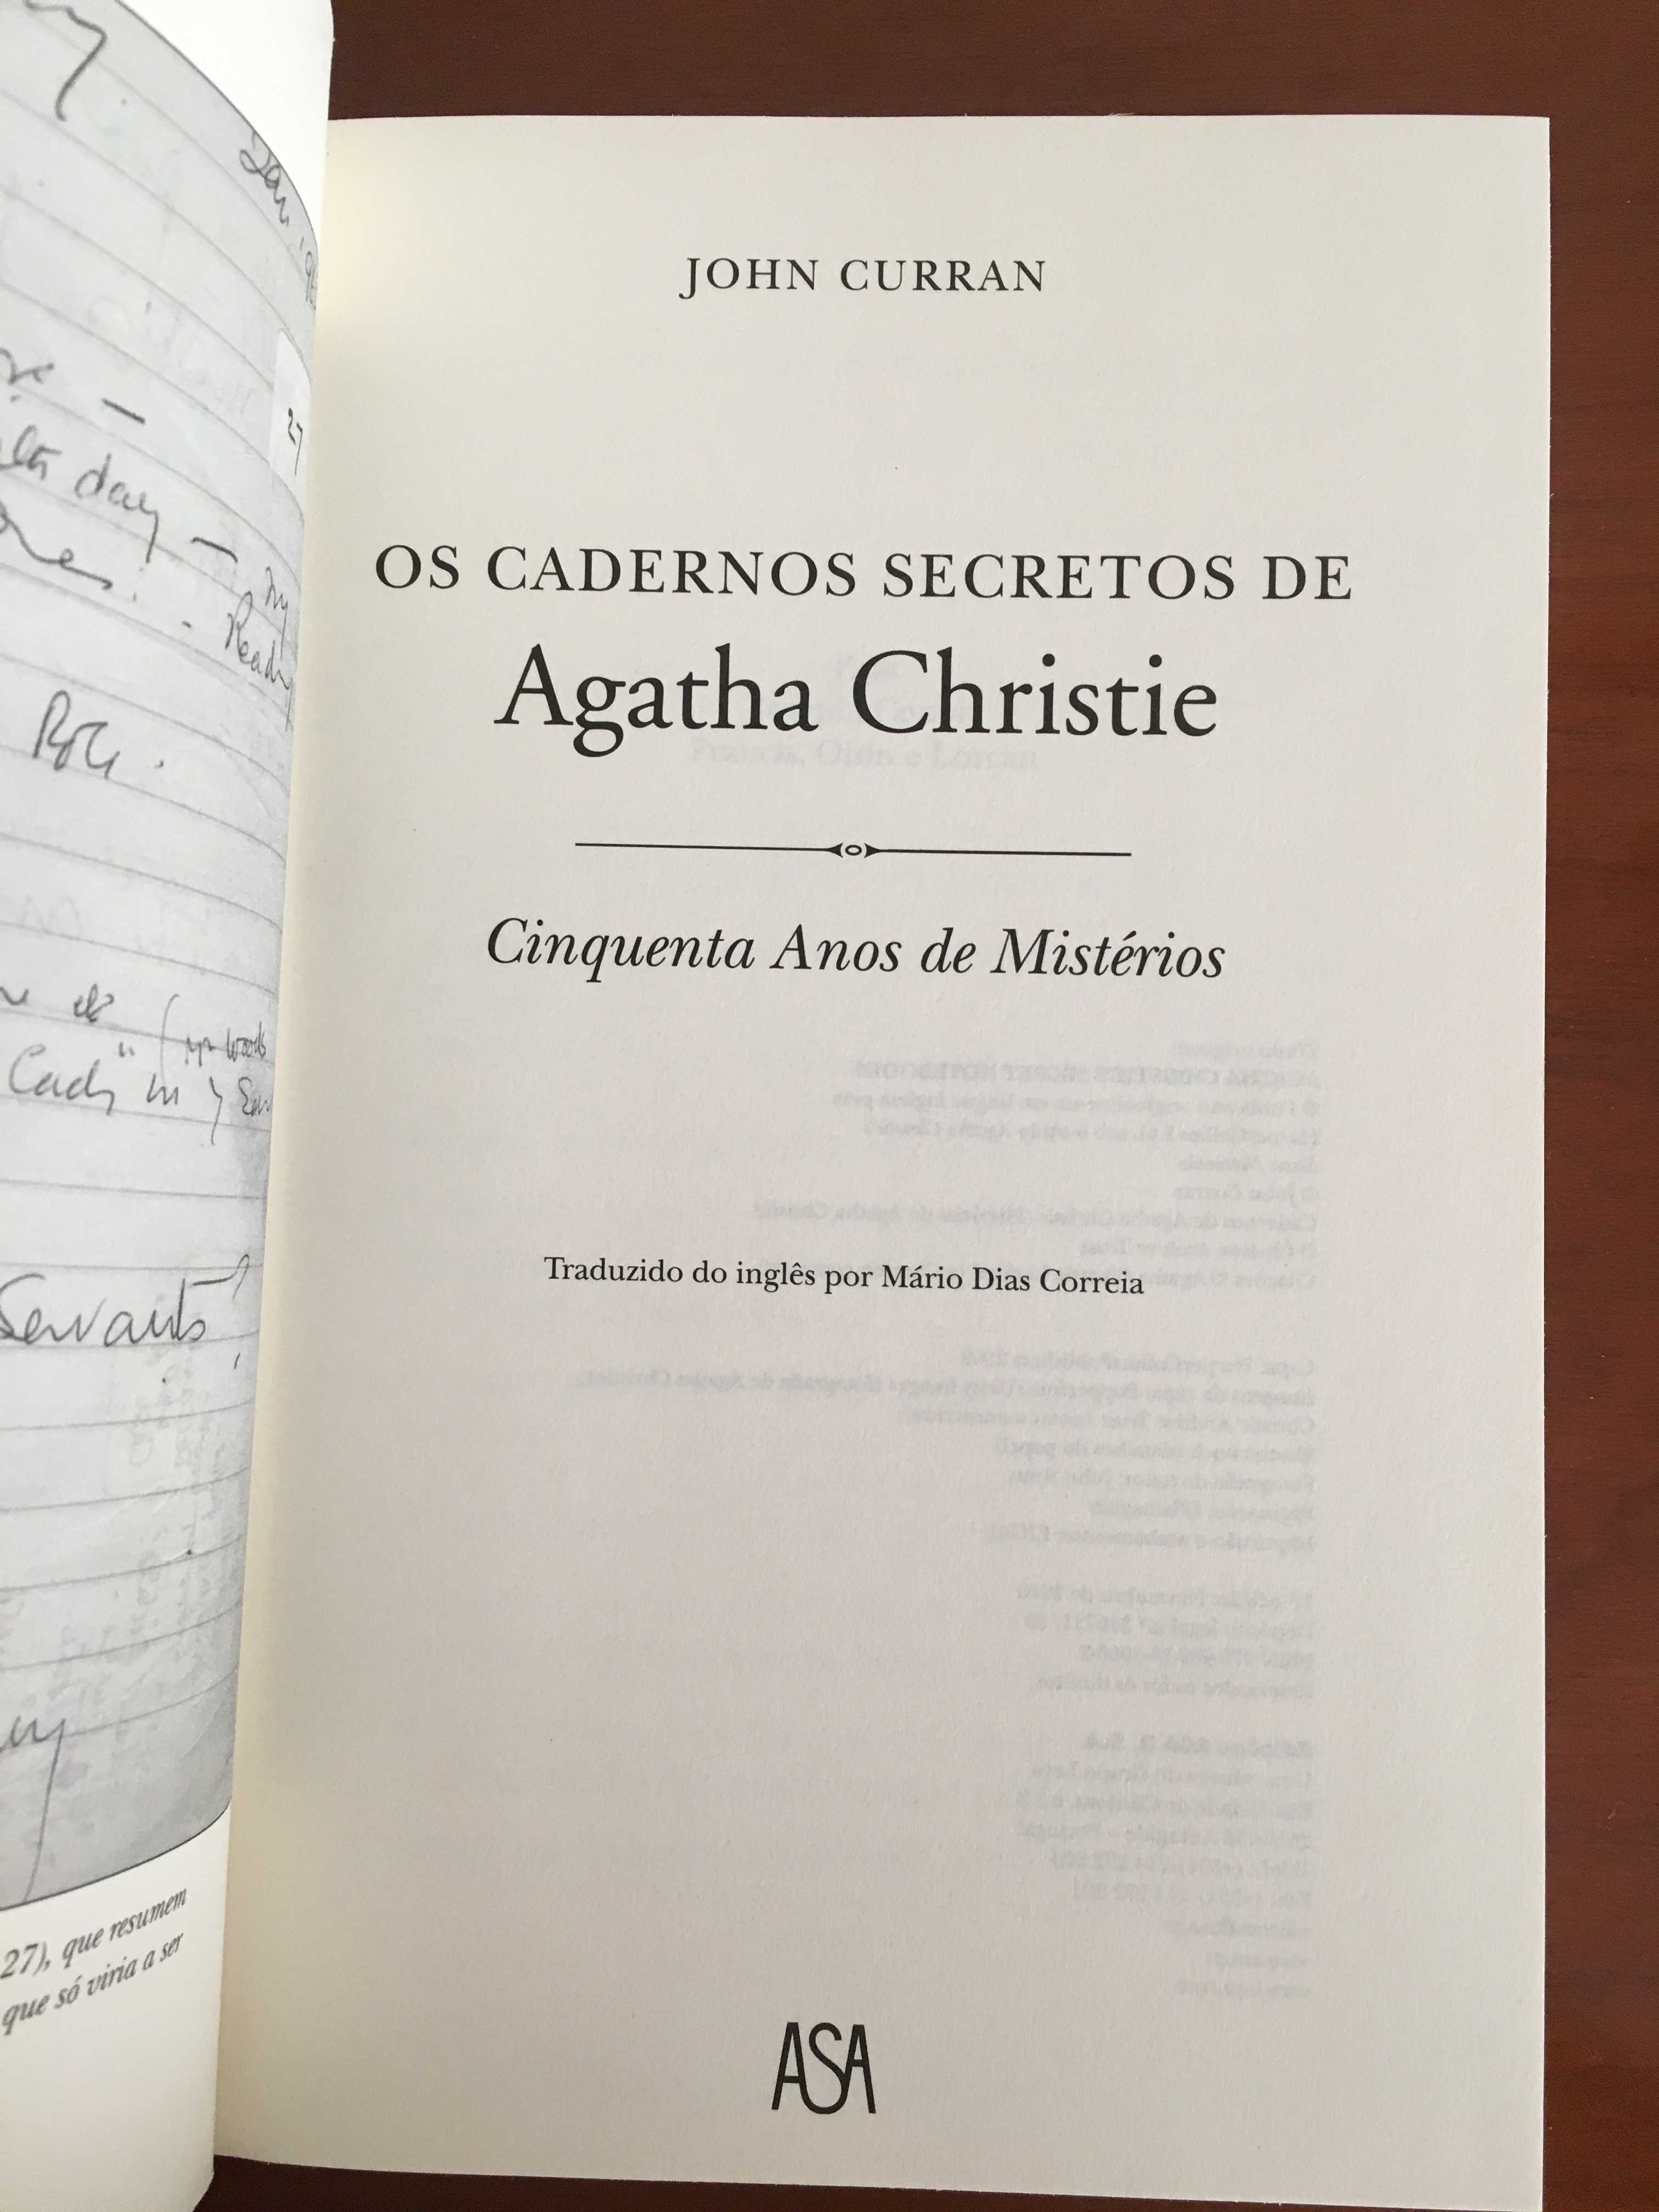 Os Cadernos Secretos de Agatha Christie - NOVO!